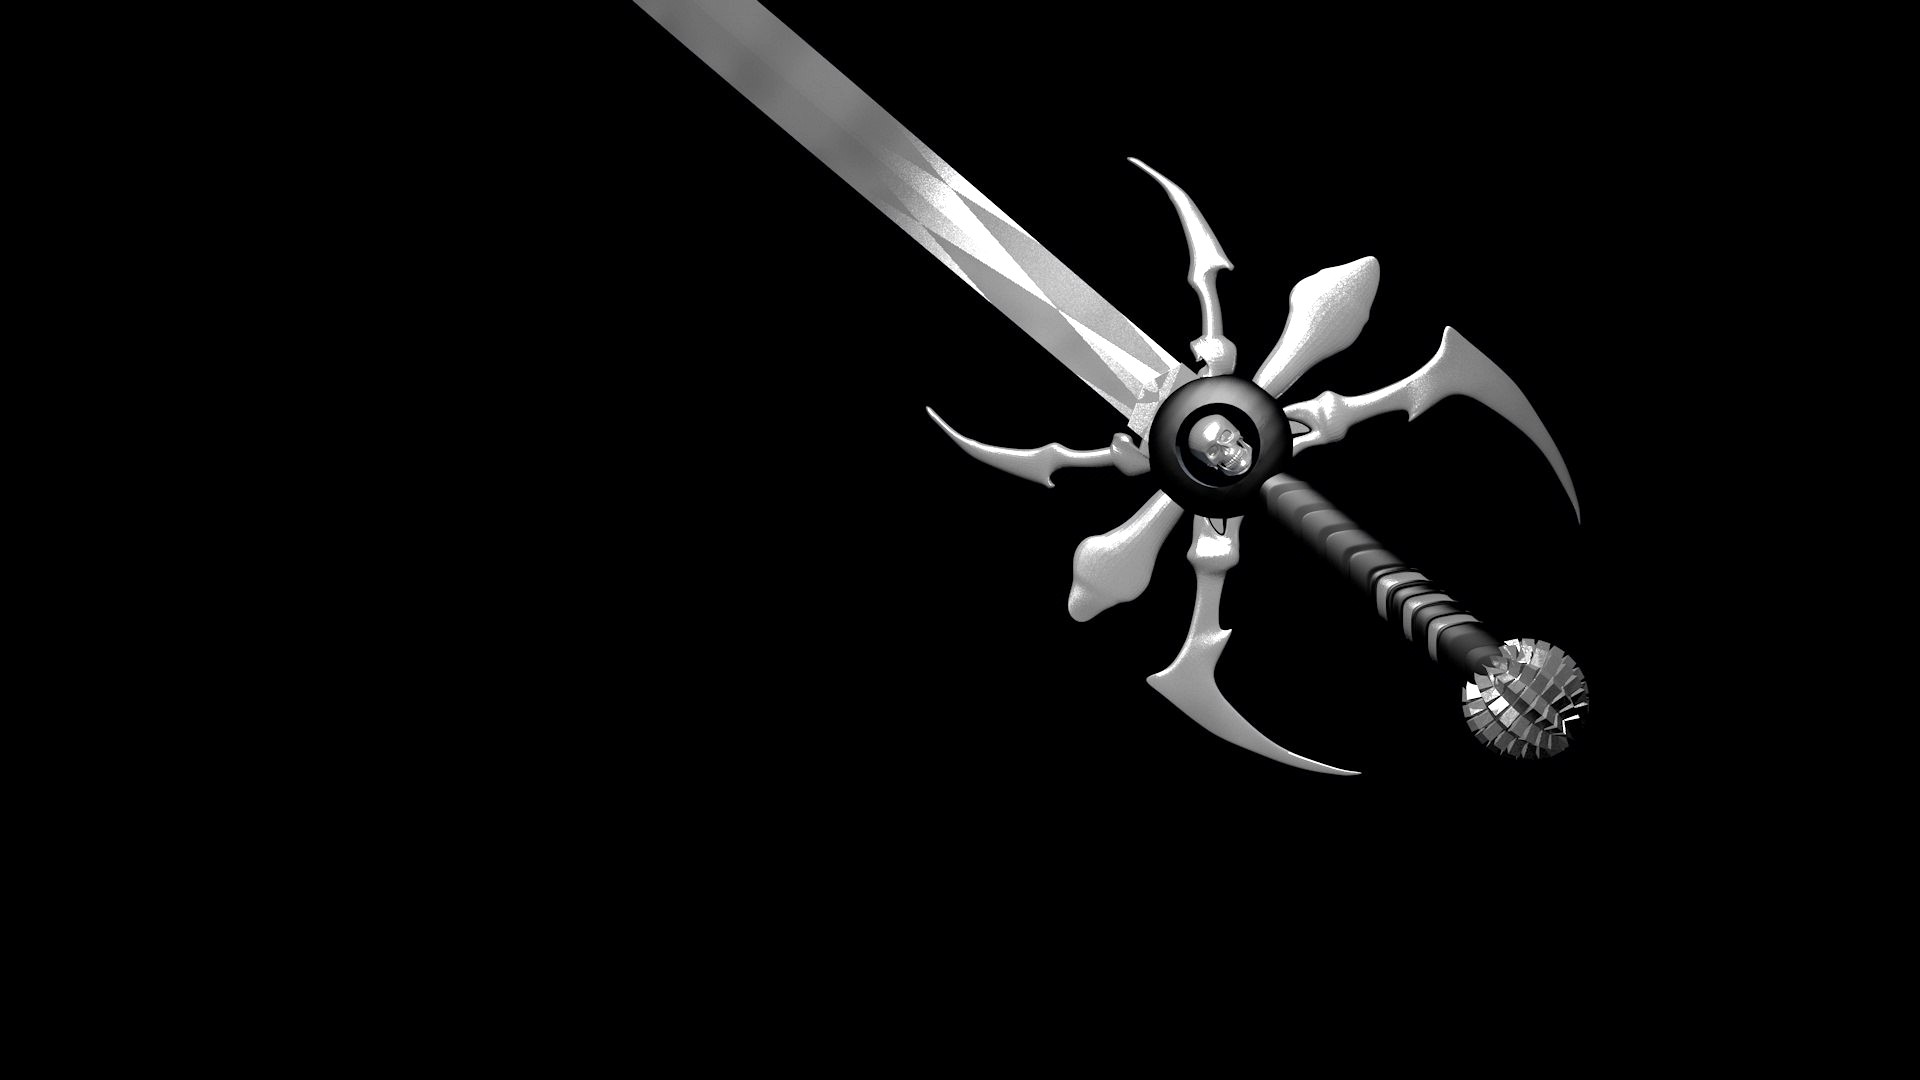 Spider sword